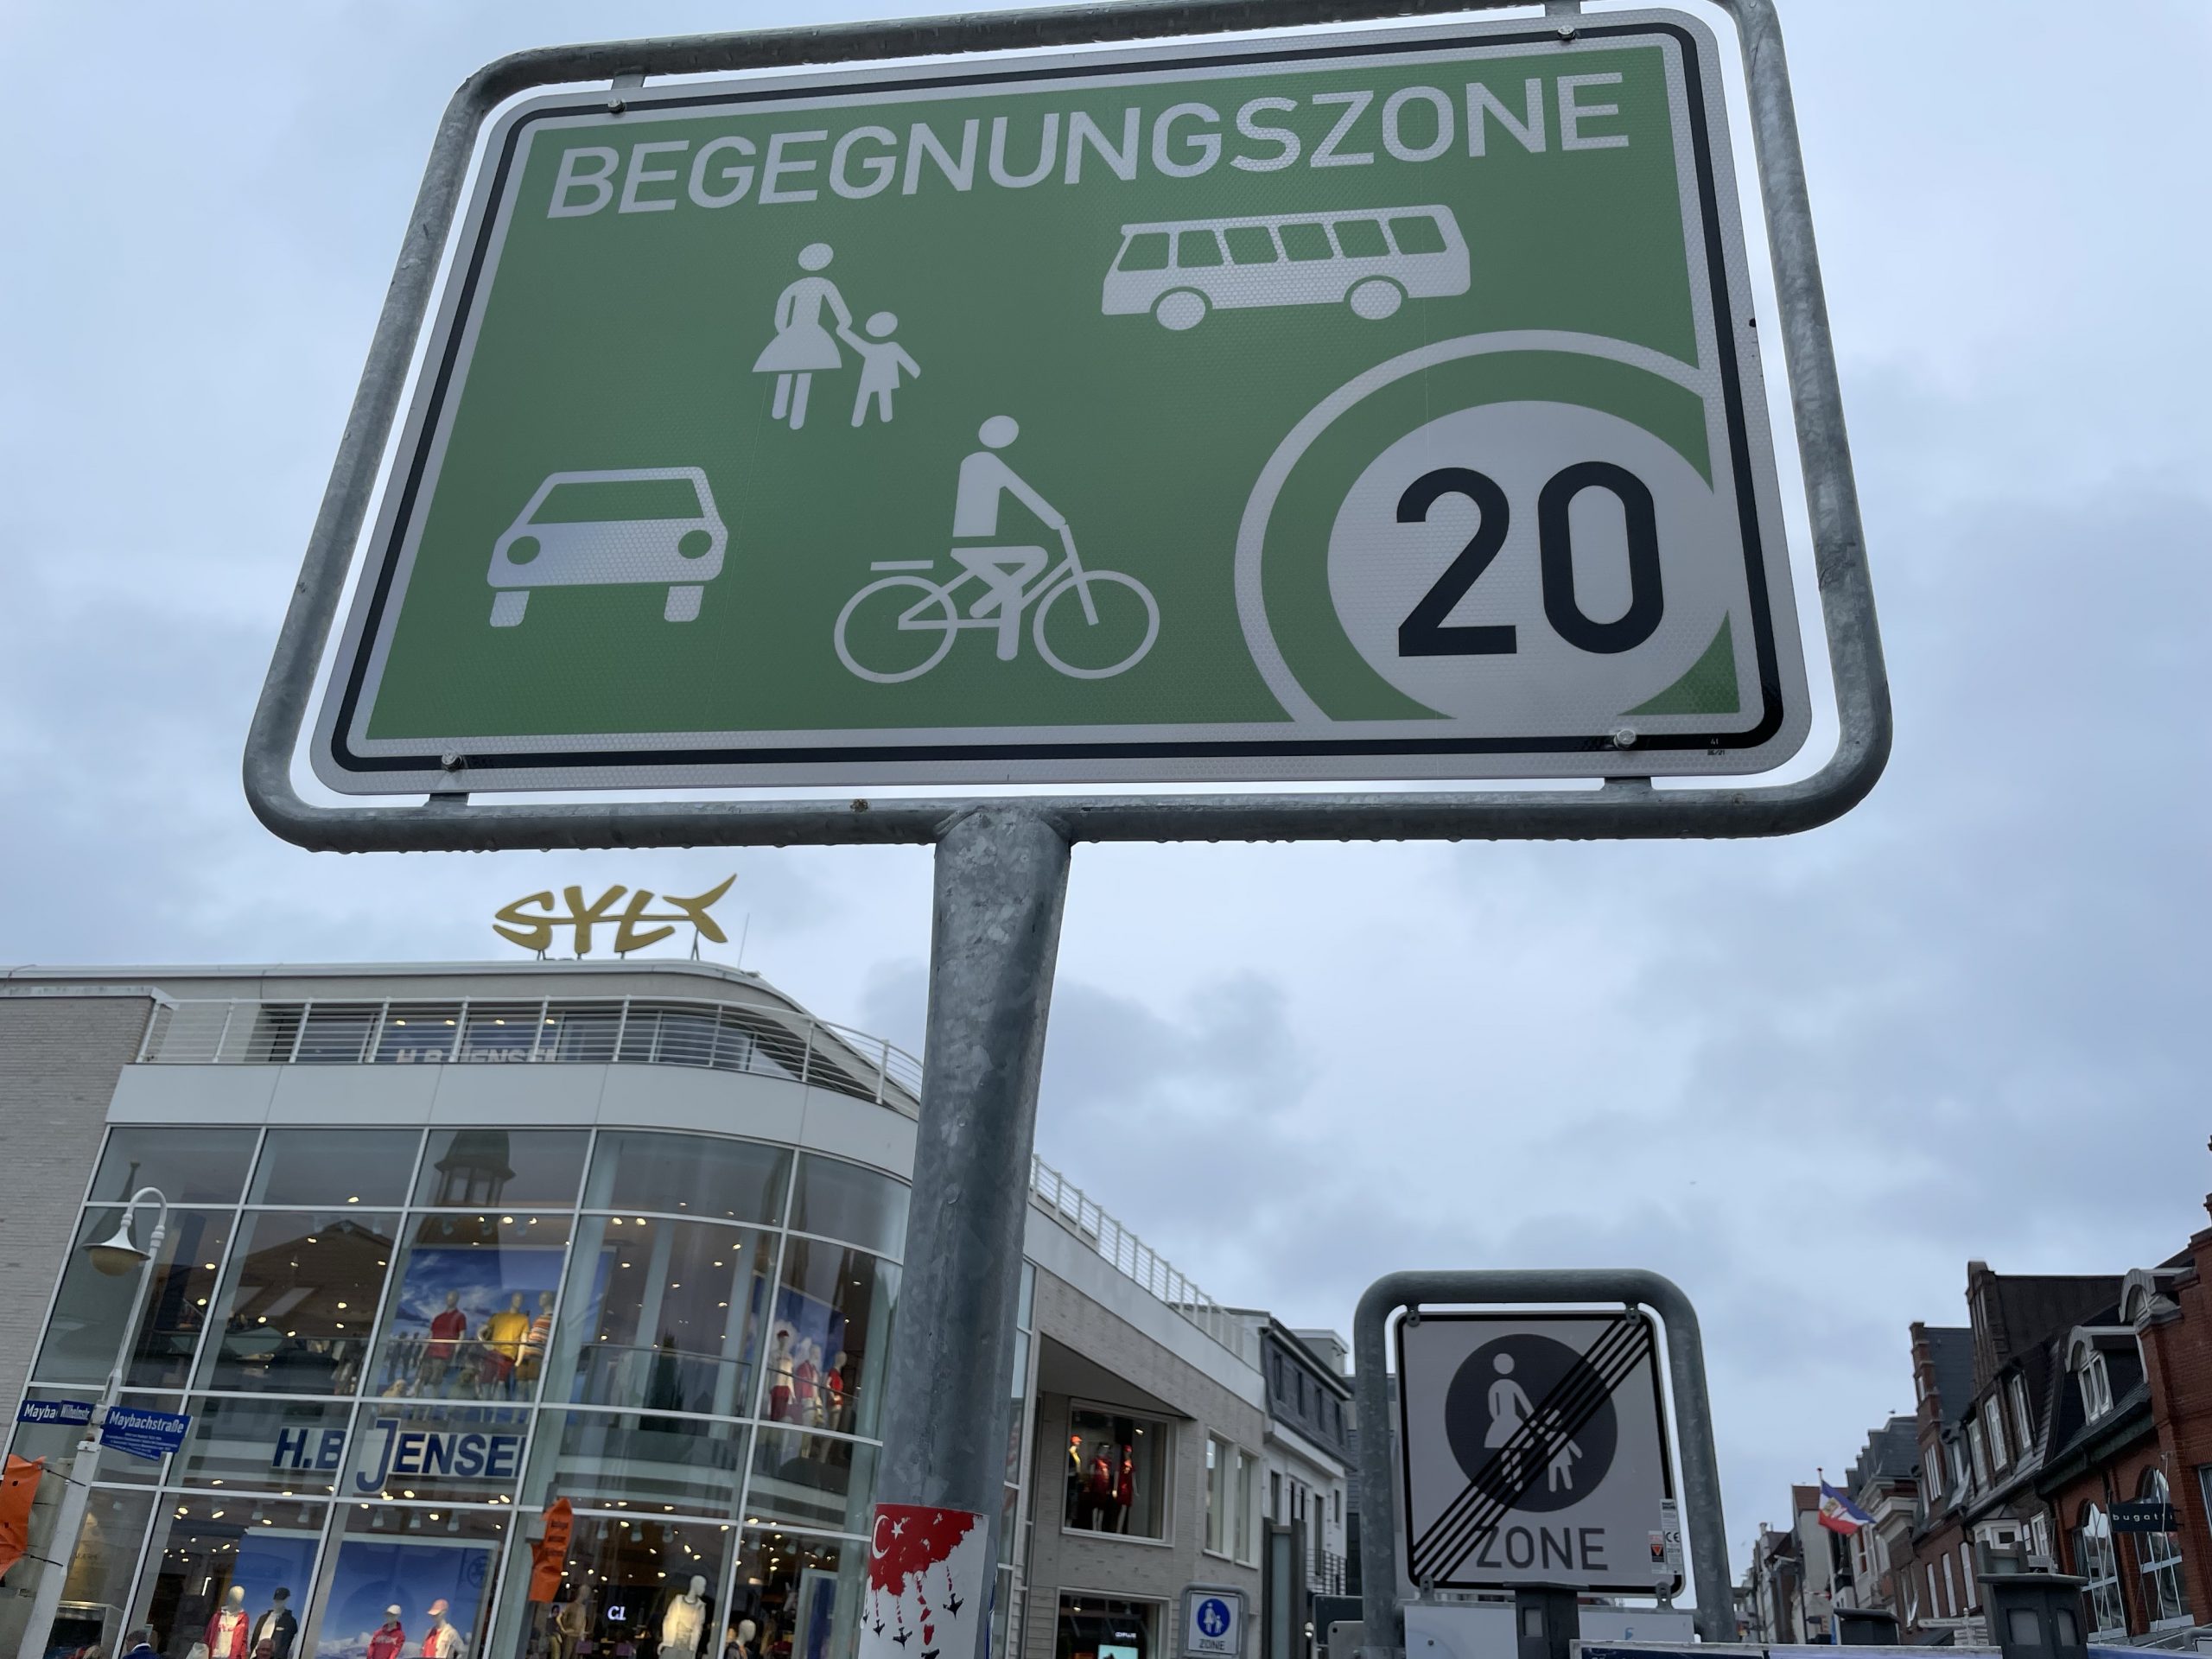 Begegnungszonenschild in Westerland